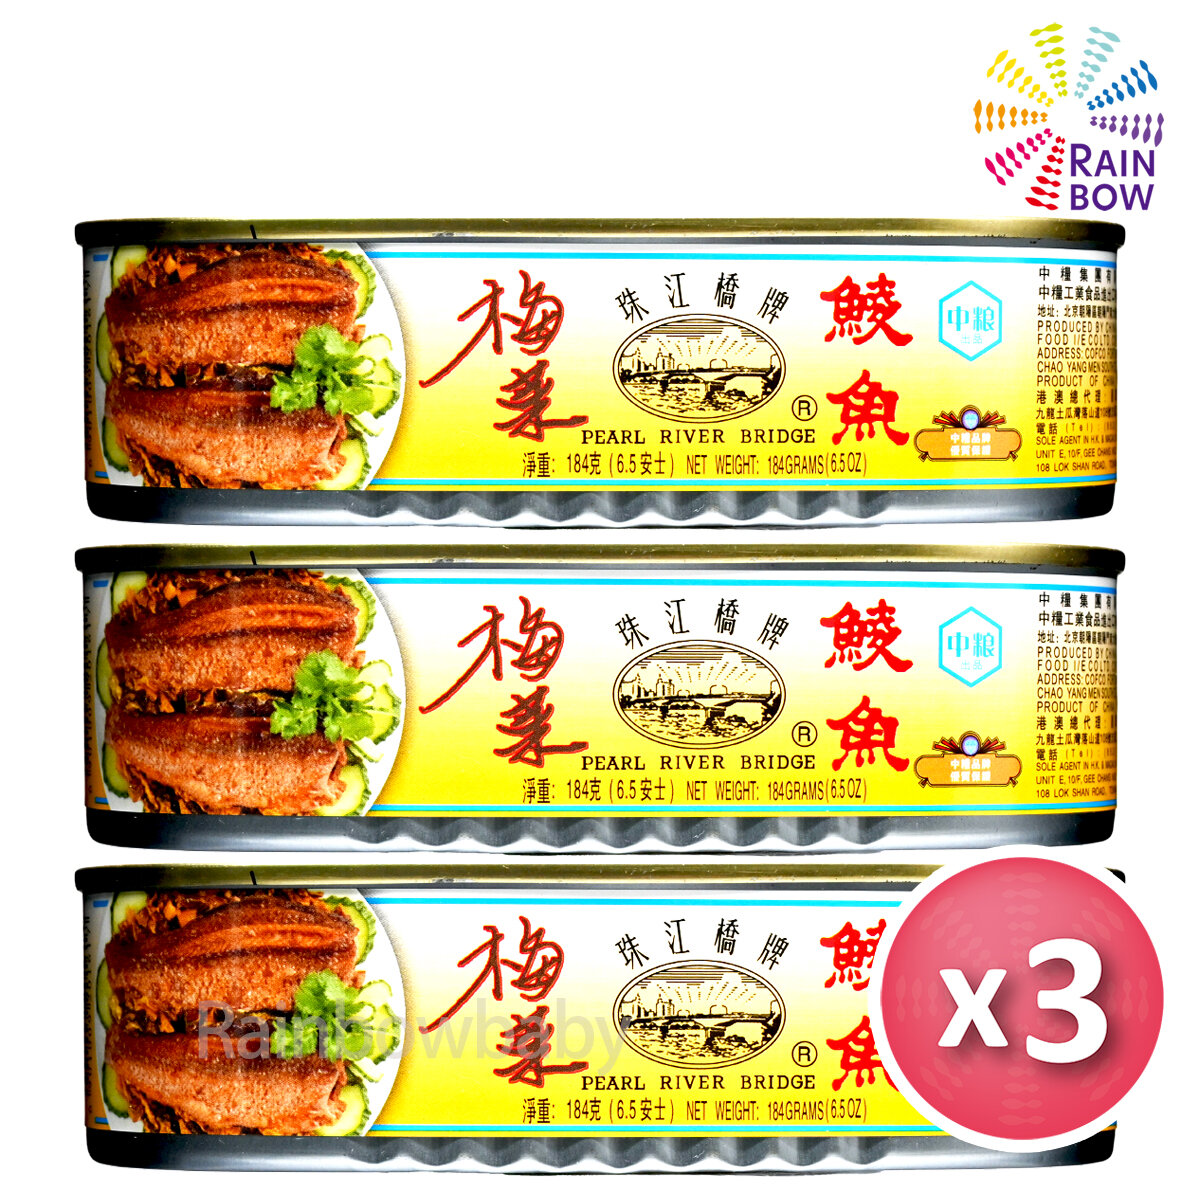 珠江橋牌| [X3] 梅菜鯪魚184g × 3罐裝抗疫價! (01617) | HKTVmall 香港